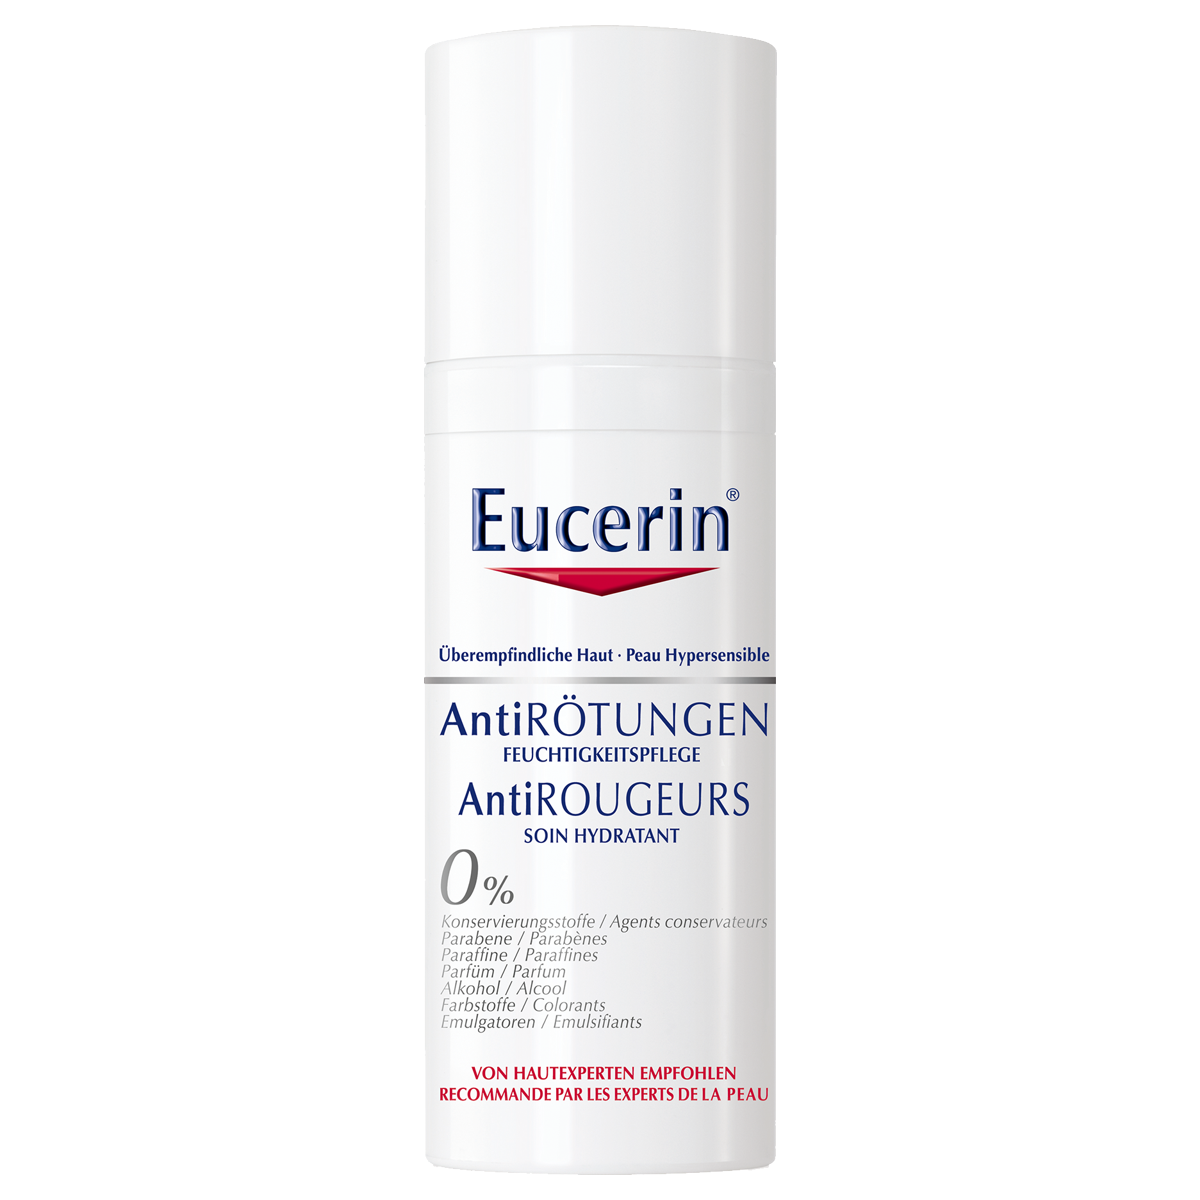 Eucerin AntiRötungen Feuchtigkeitspflege 50 ml